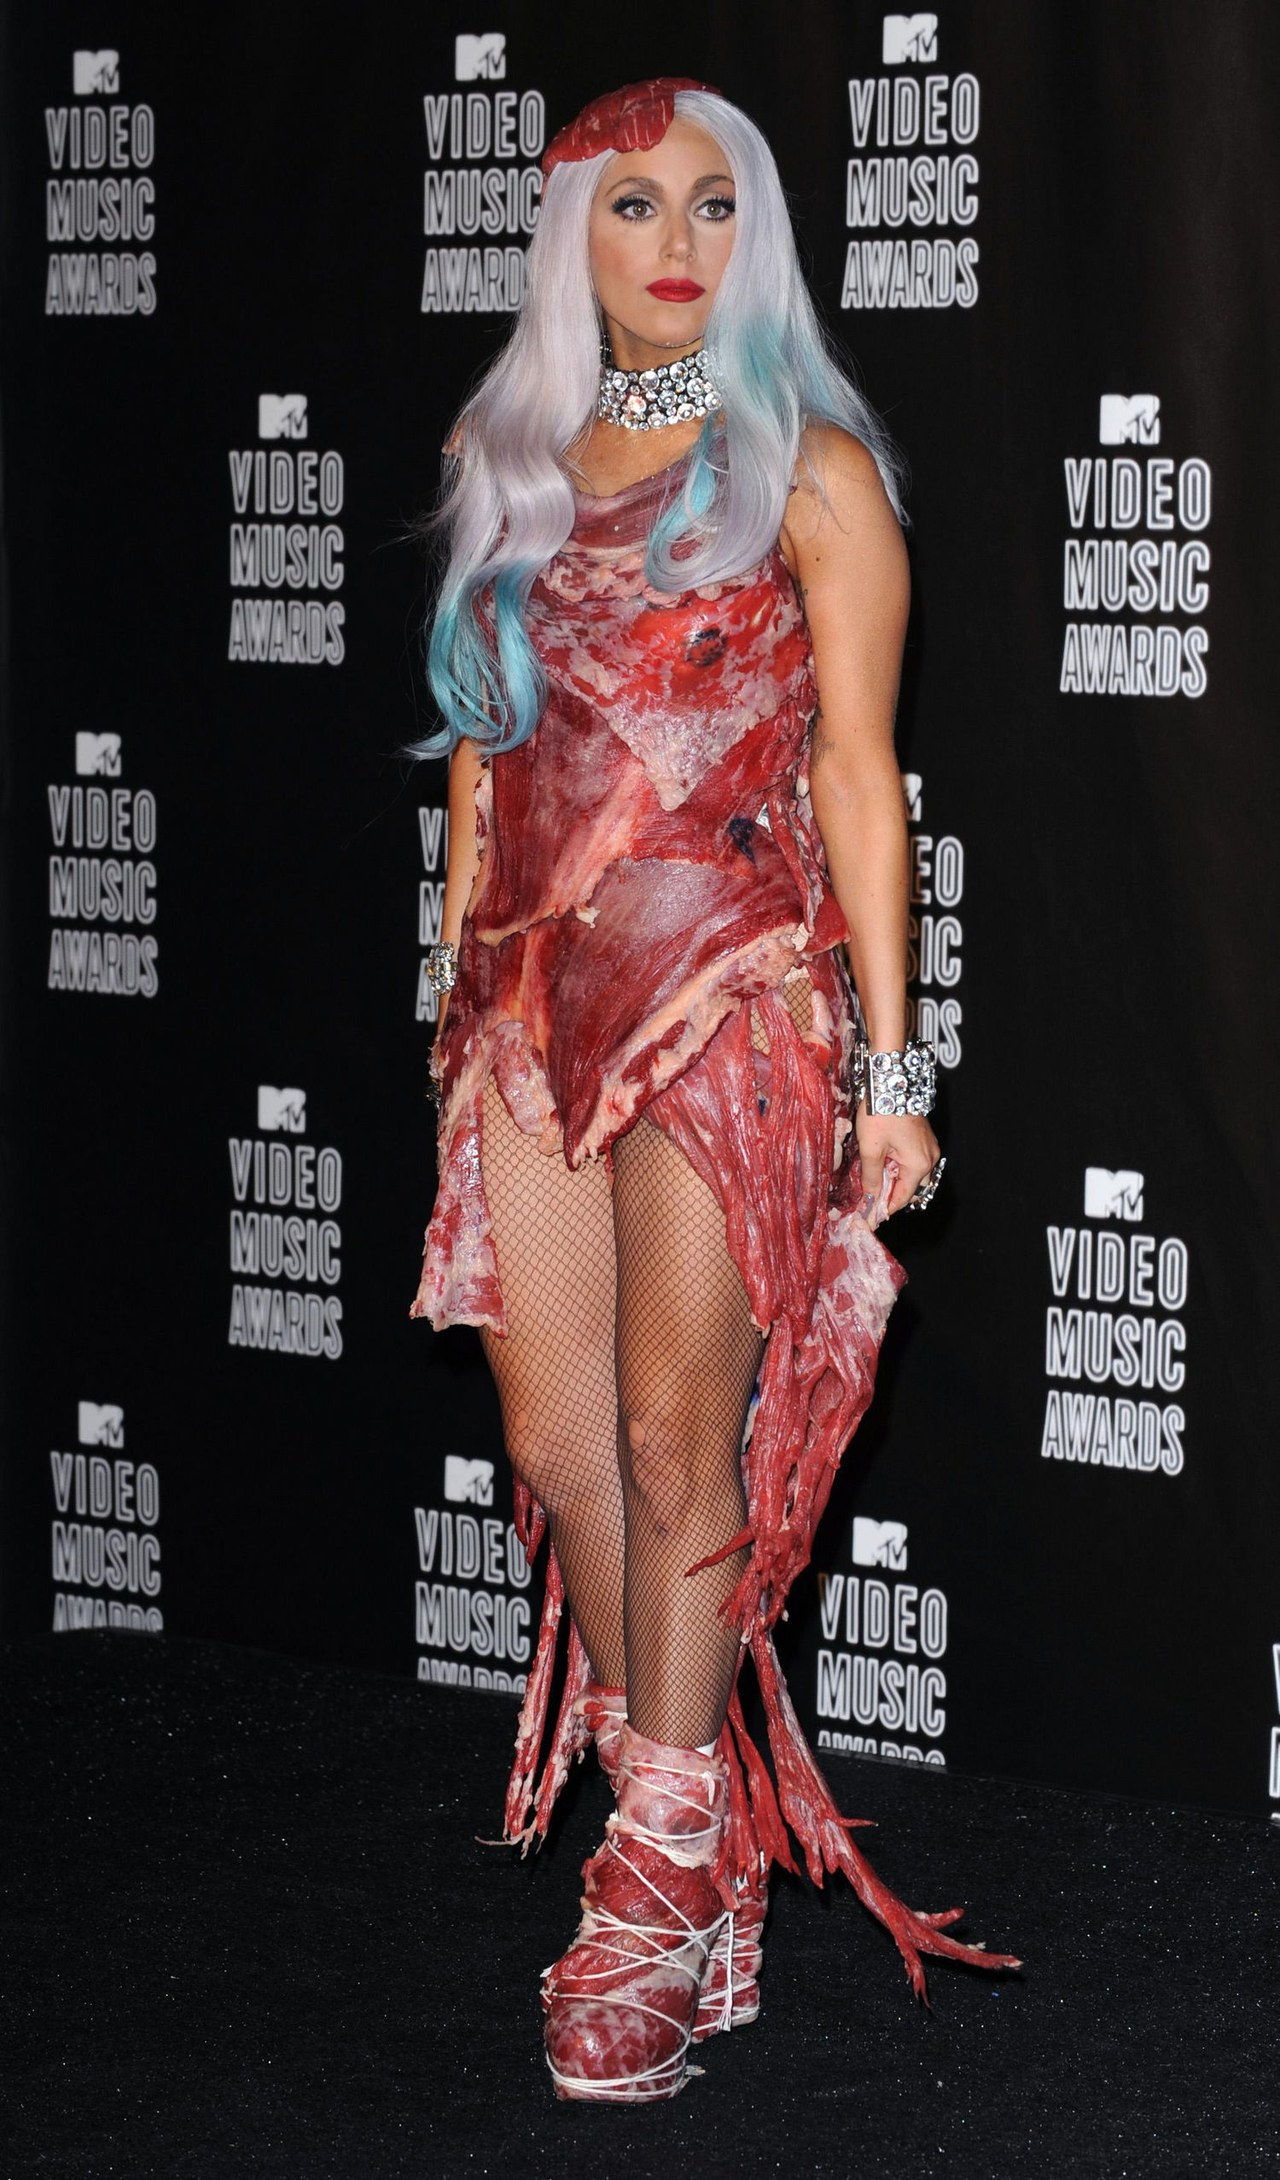 Dame gaga meat dress vmas 2010